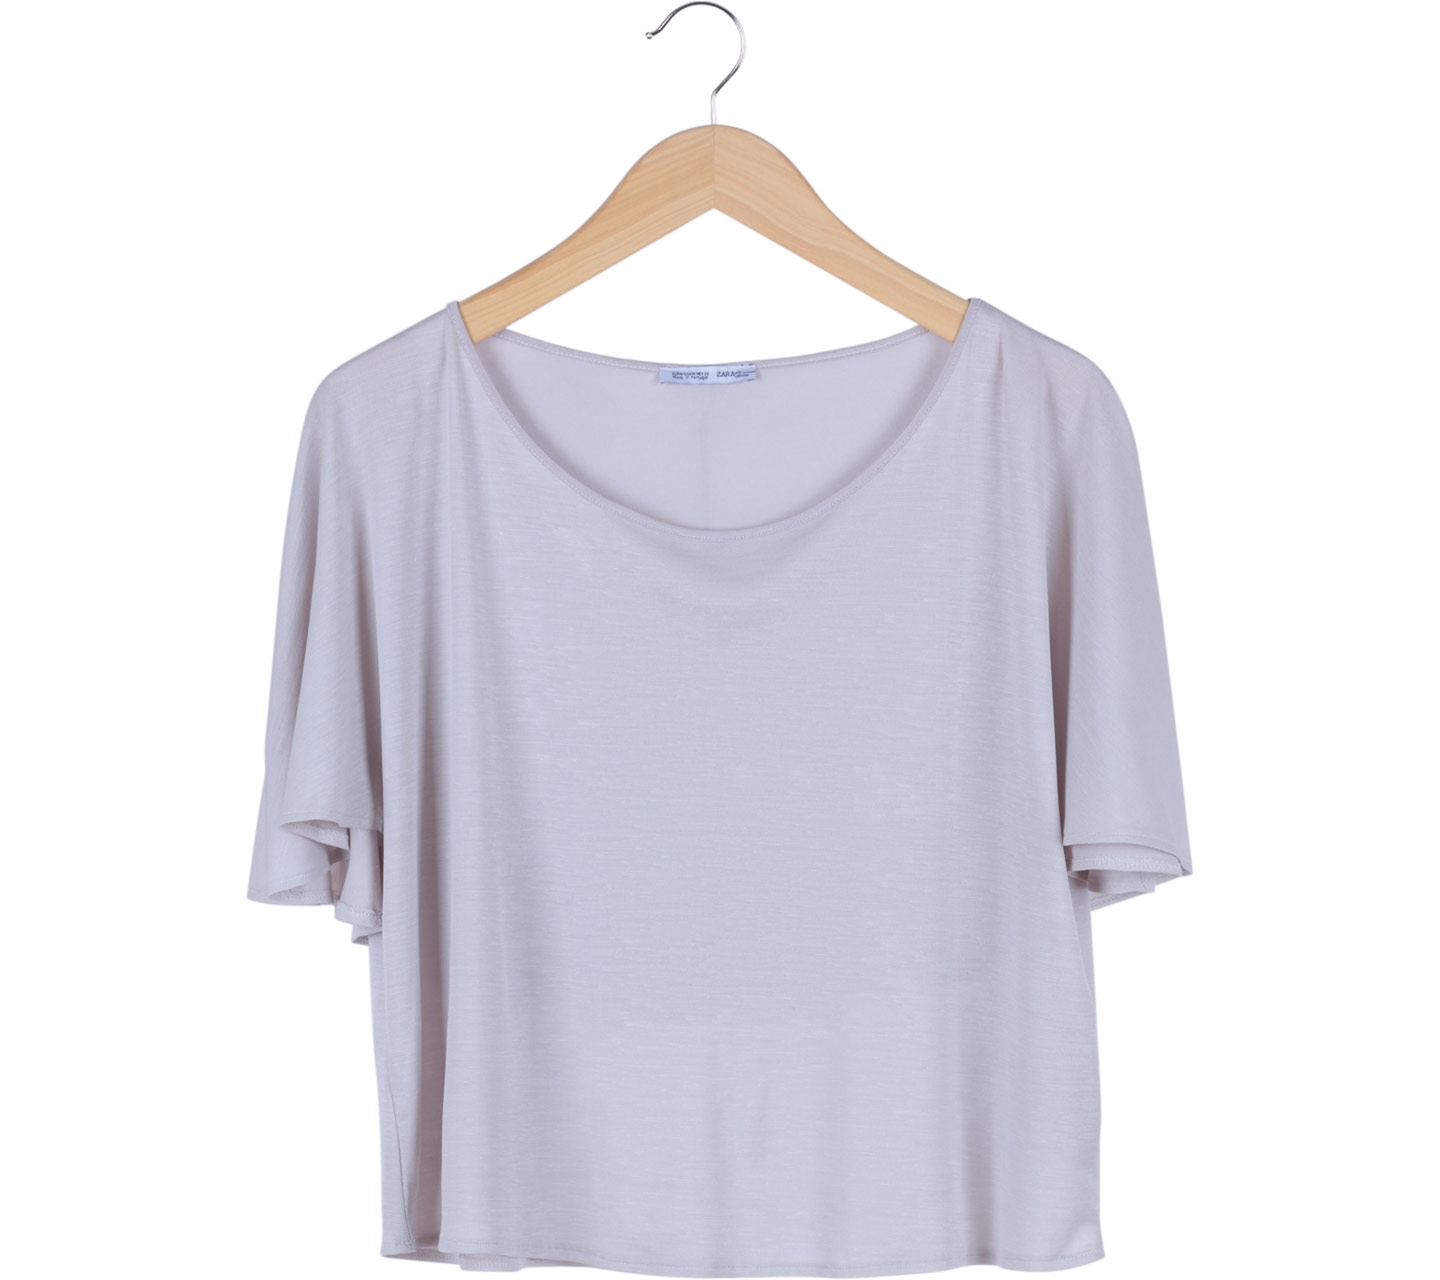 Zara Grey Batwing T-Shirt